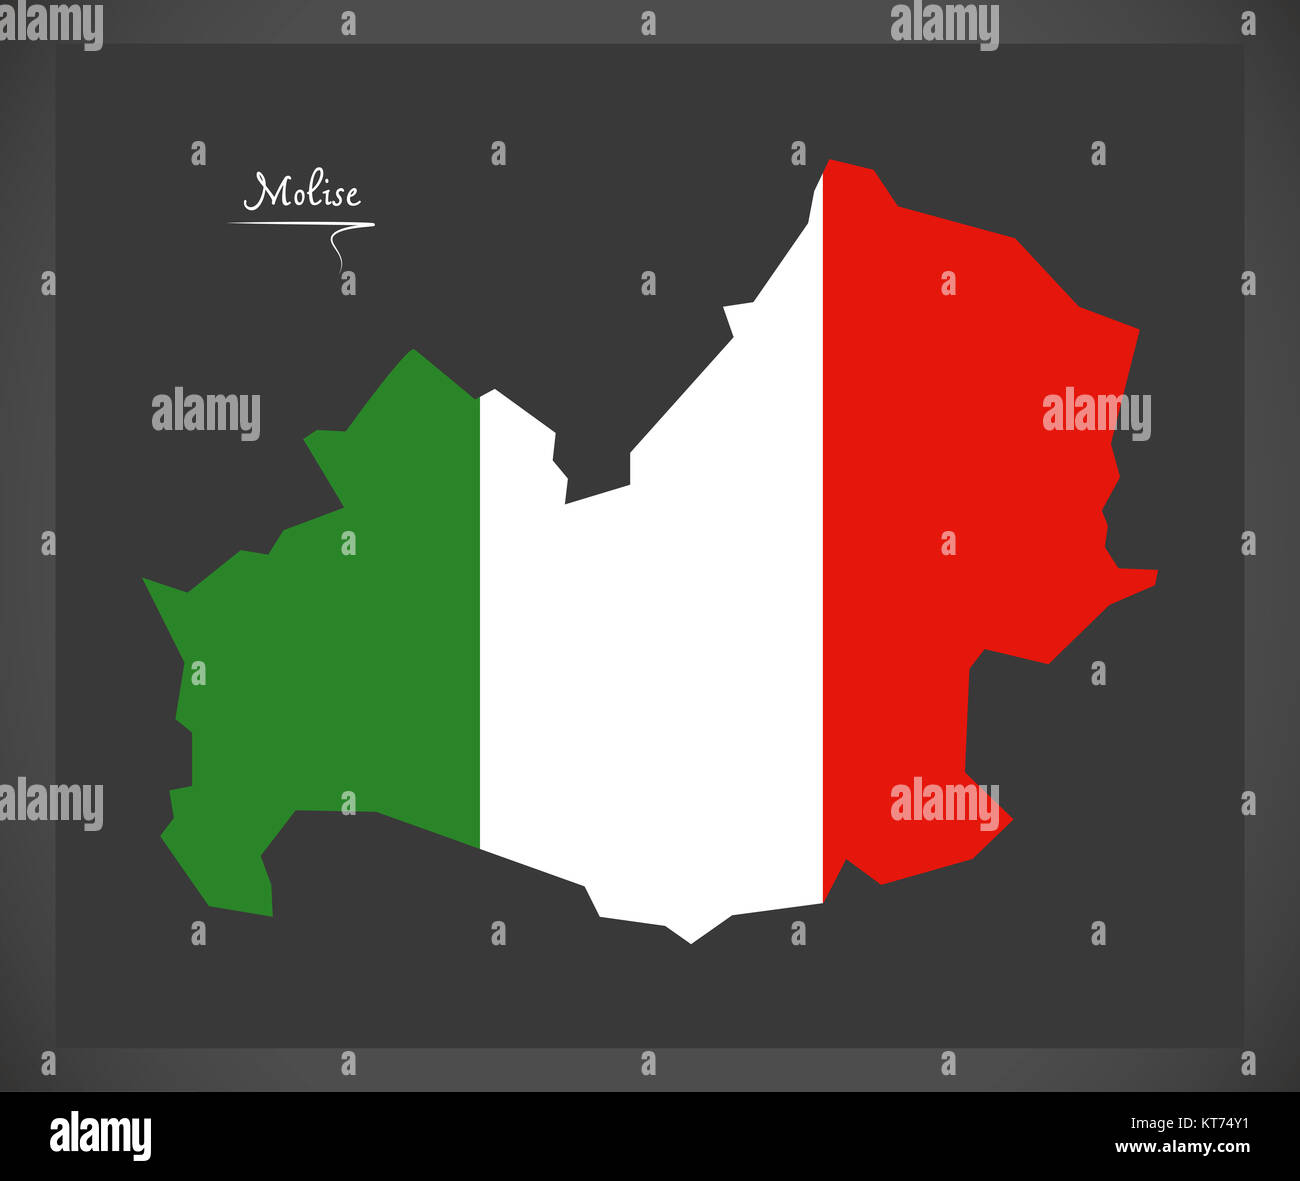 Molise map with Italian national flag illustration Stock Photo